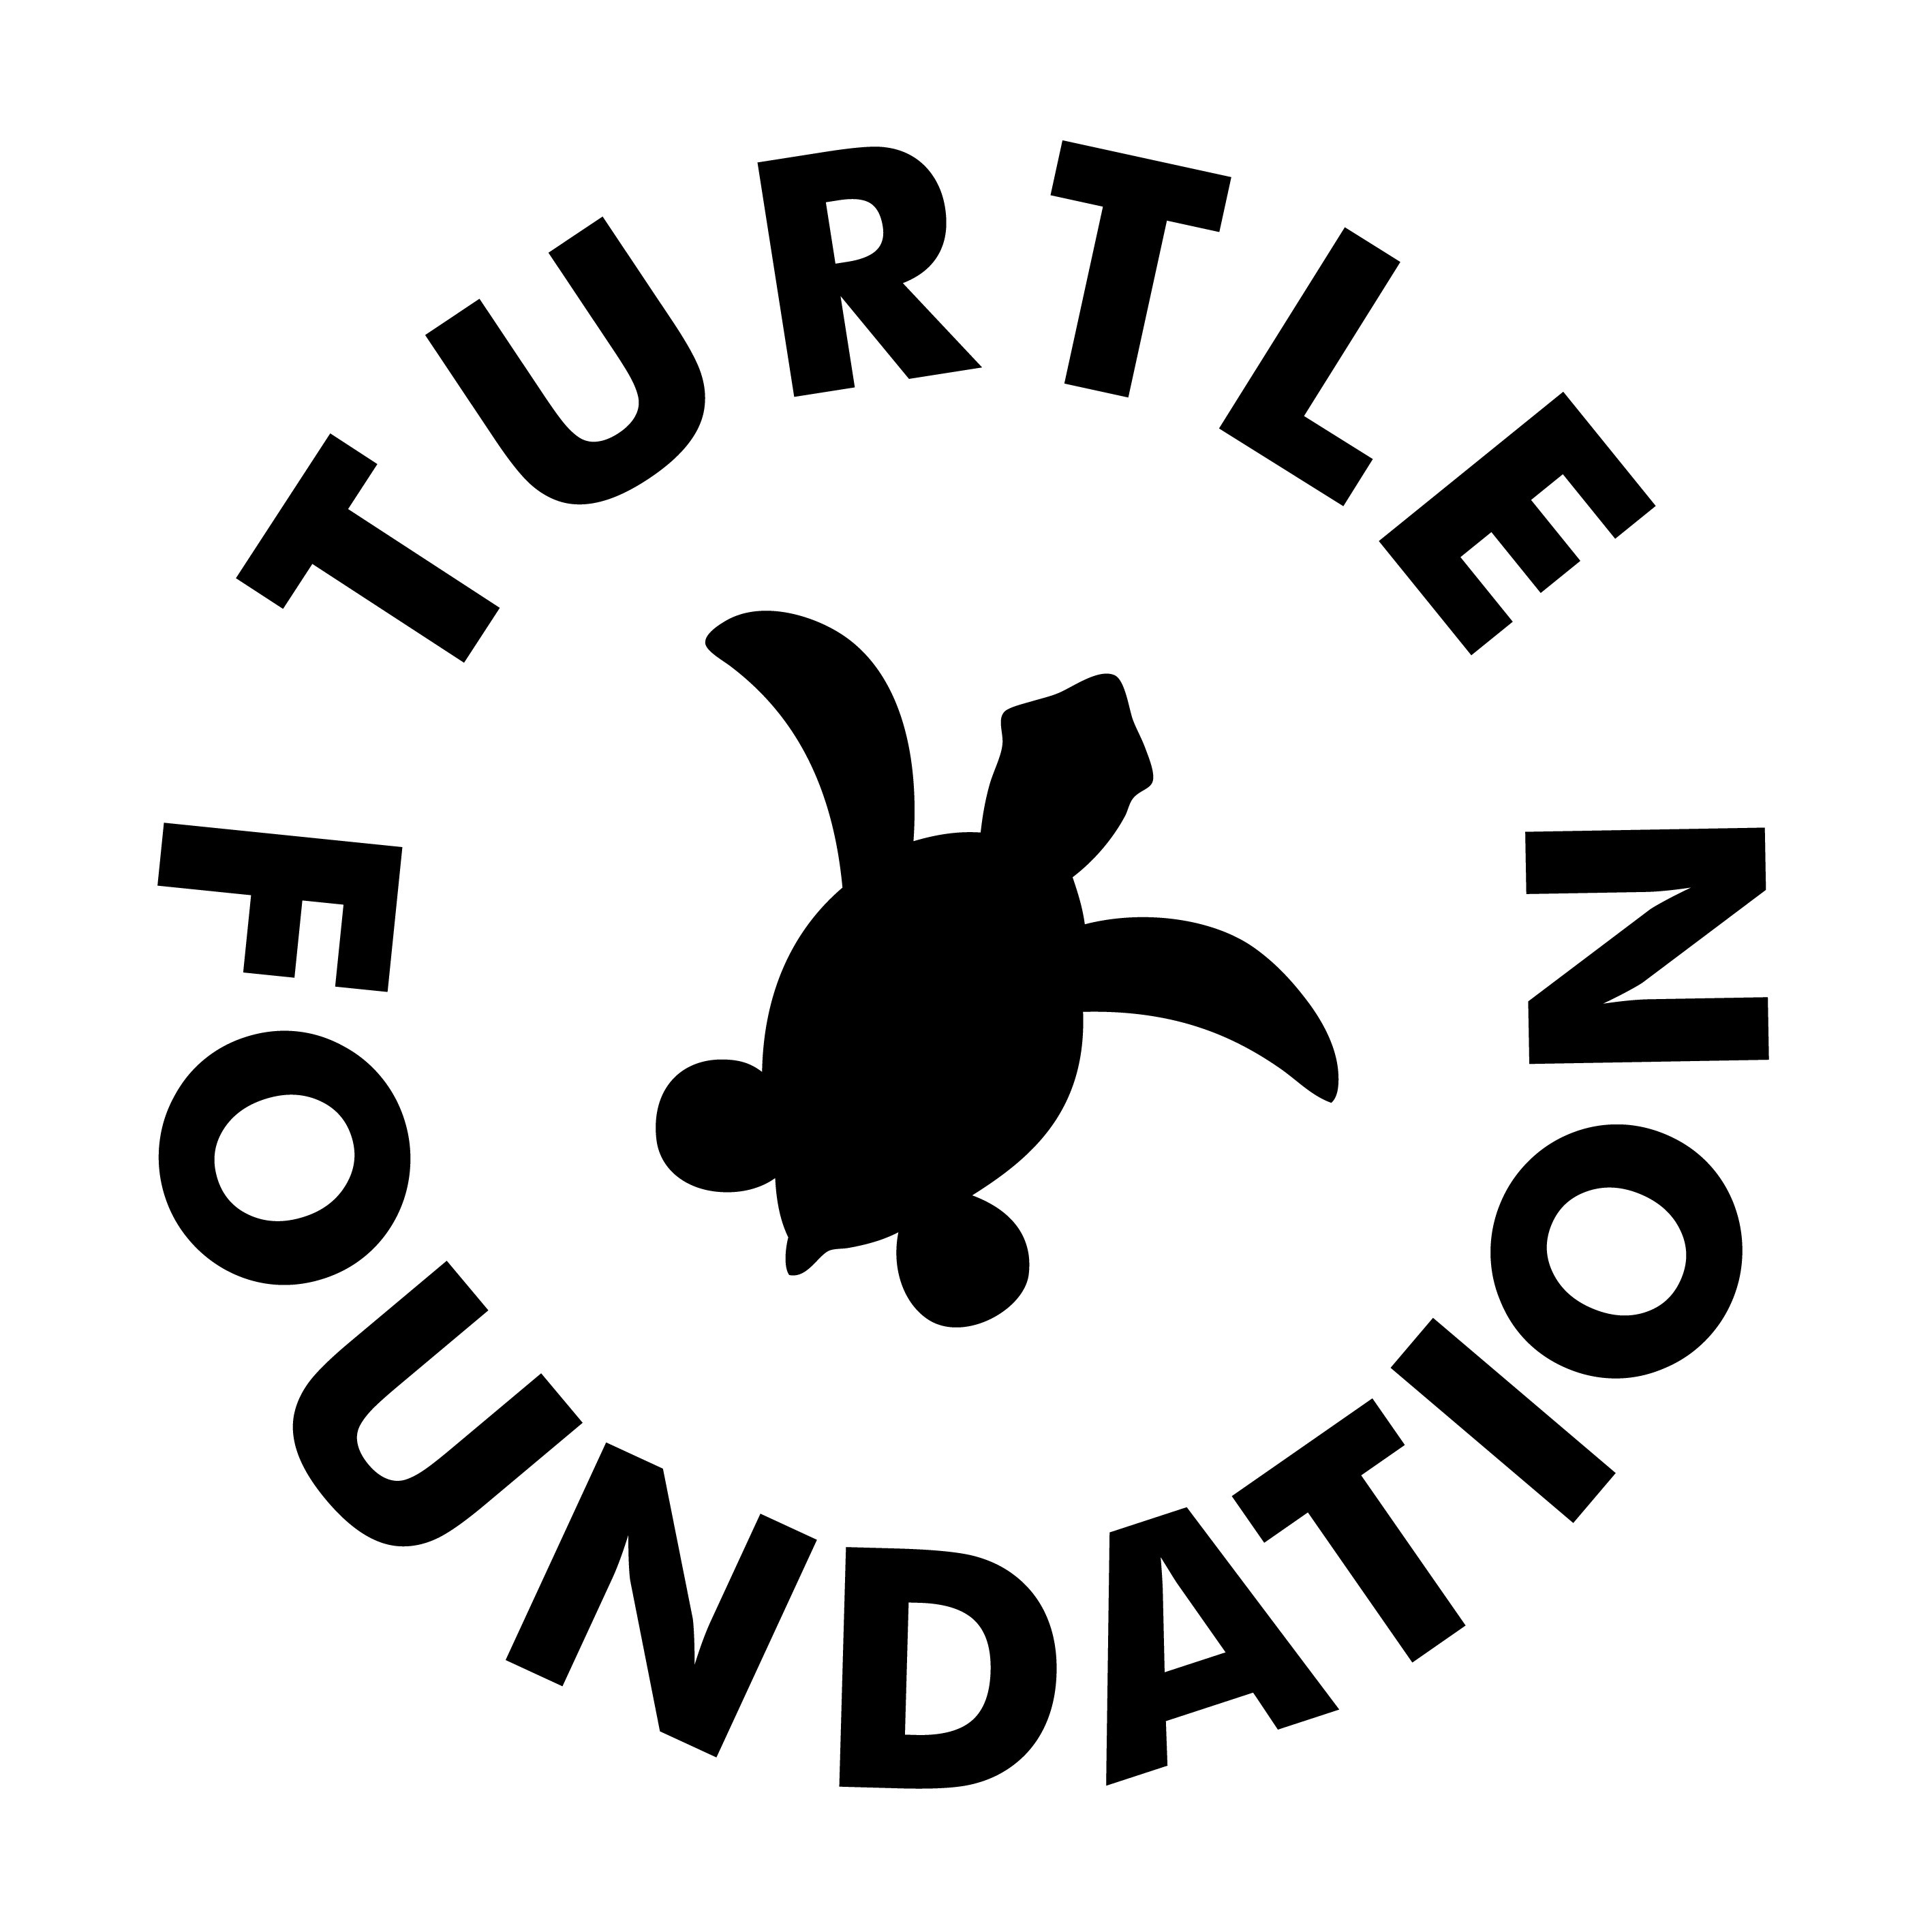 Turtle Foundation Logo